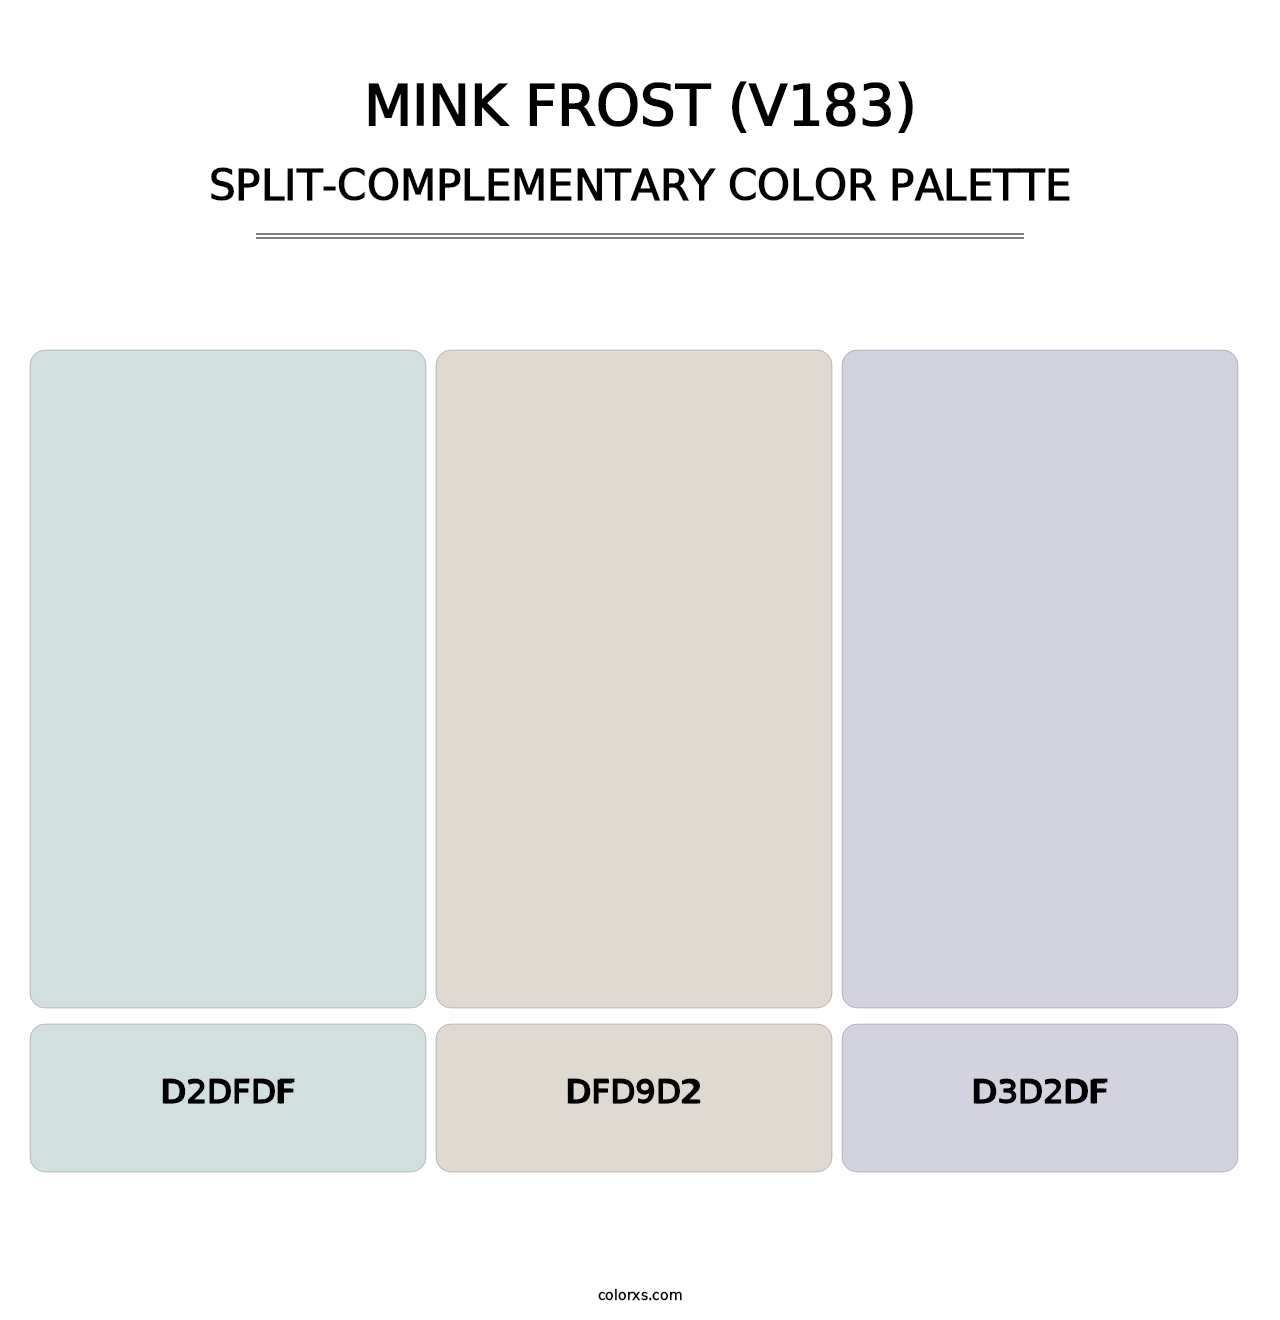 Mink Frost (V183) - Split-Complementary Color Palette